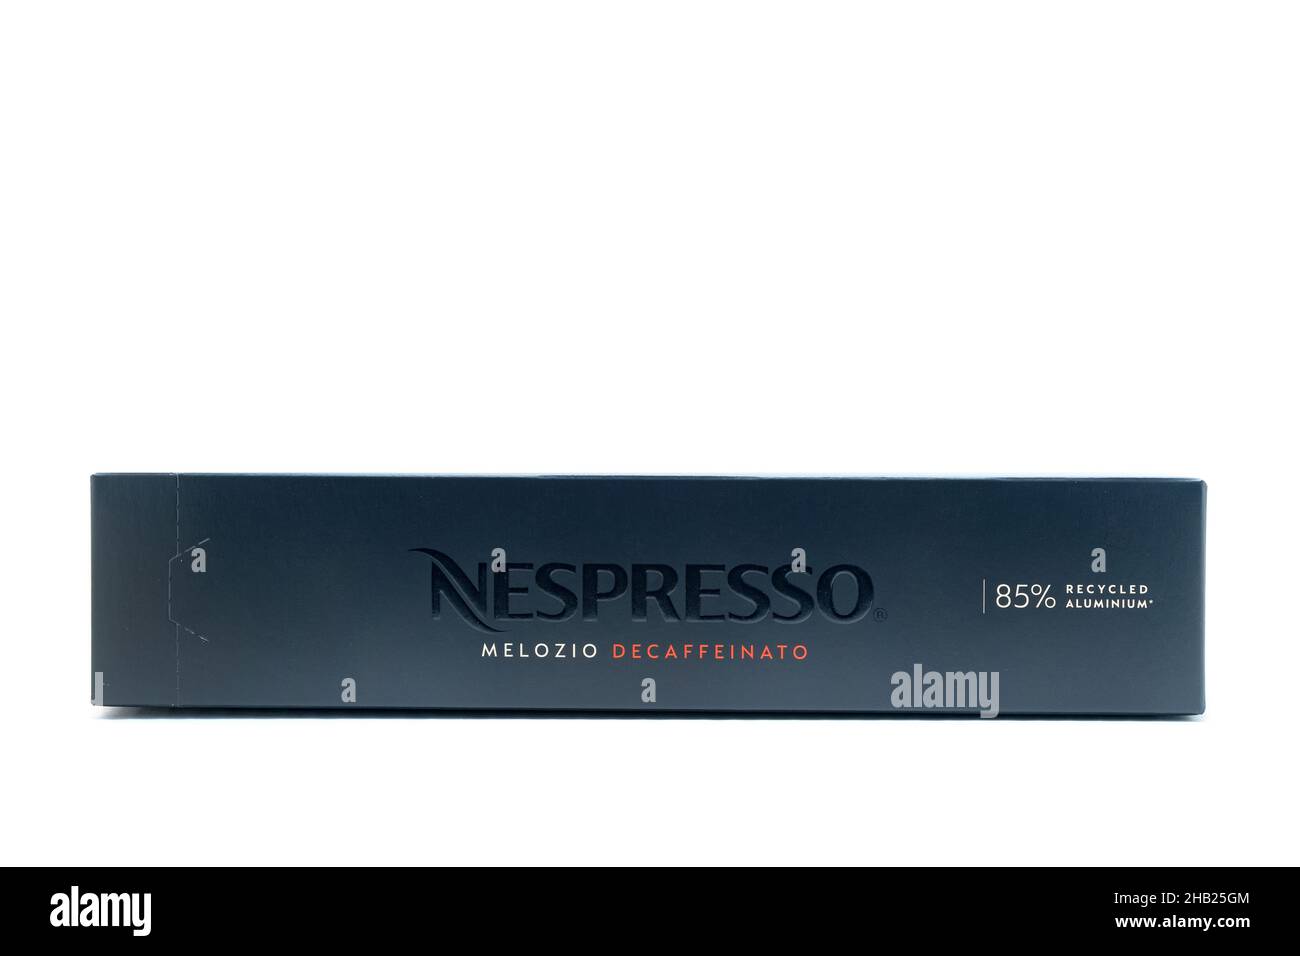 Une boîte de dix capsules de café Nespresso melozio décaféinato.Chaque  230ml capsules contient une tasse de café décaféiné à l'aide d'une machine  Nescafé vertuo Photo Stock - Alamy